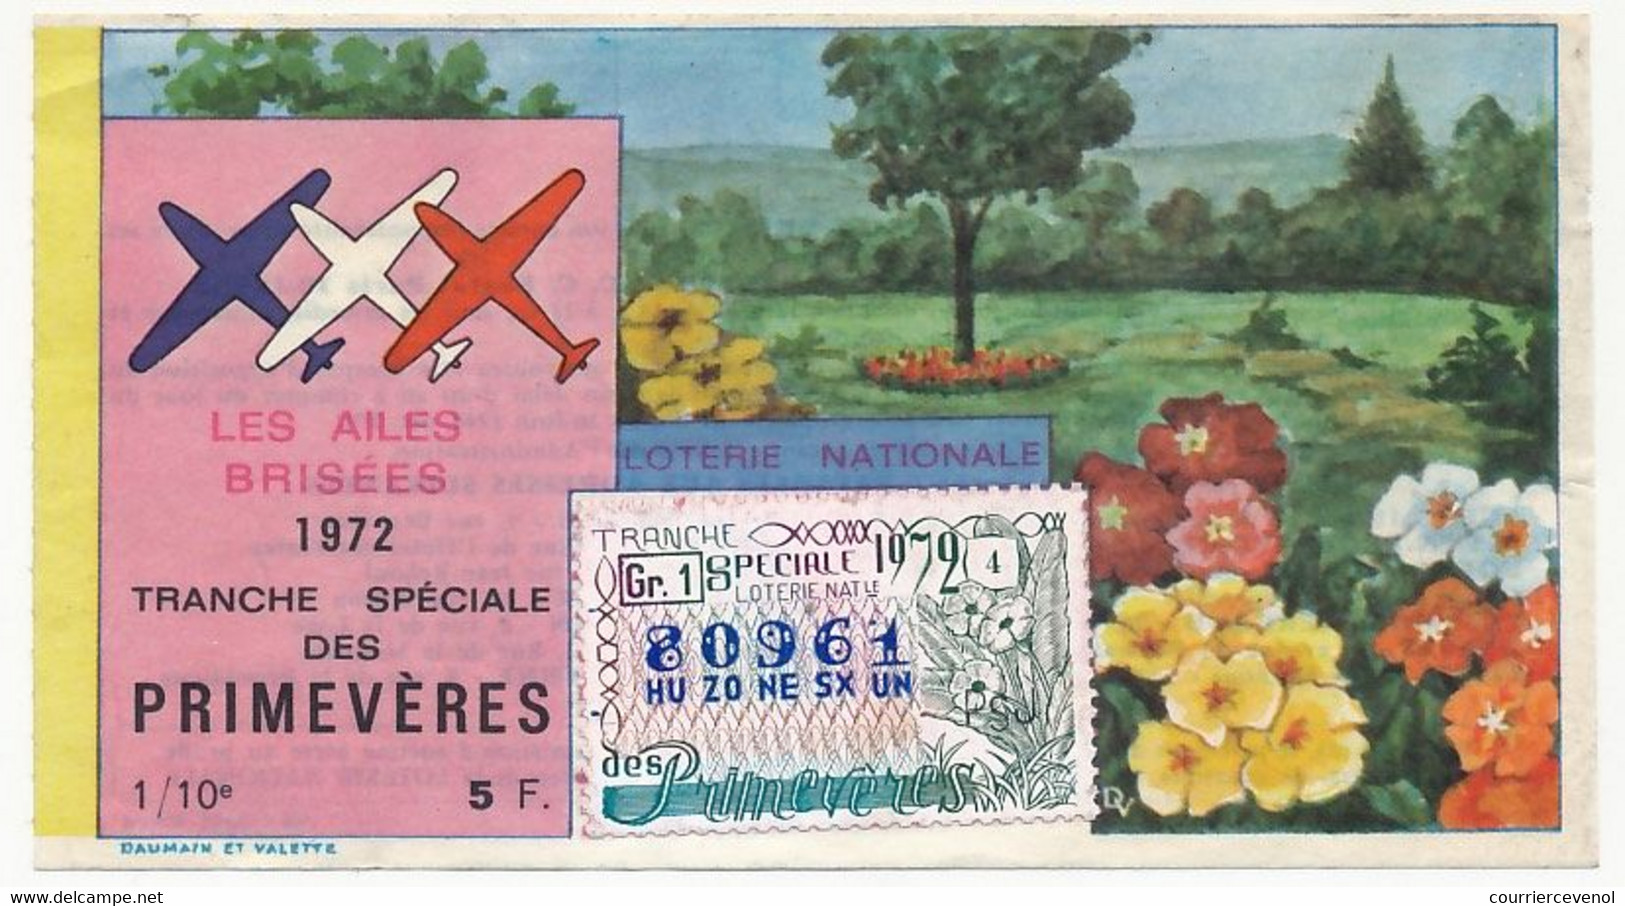 FRANCE - Loterie Nationale - 1/10ème - Les Ailes Brisées - Tranche Spéciale Des Primevères - 1972 - Billets De Loterie